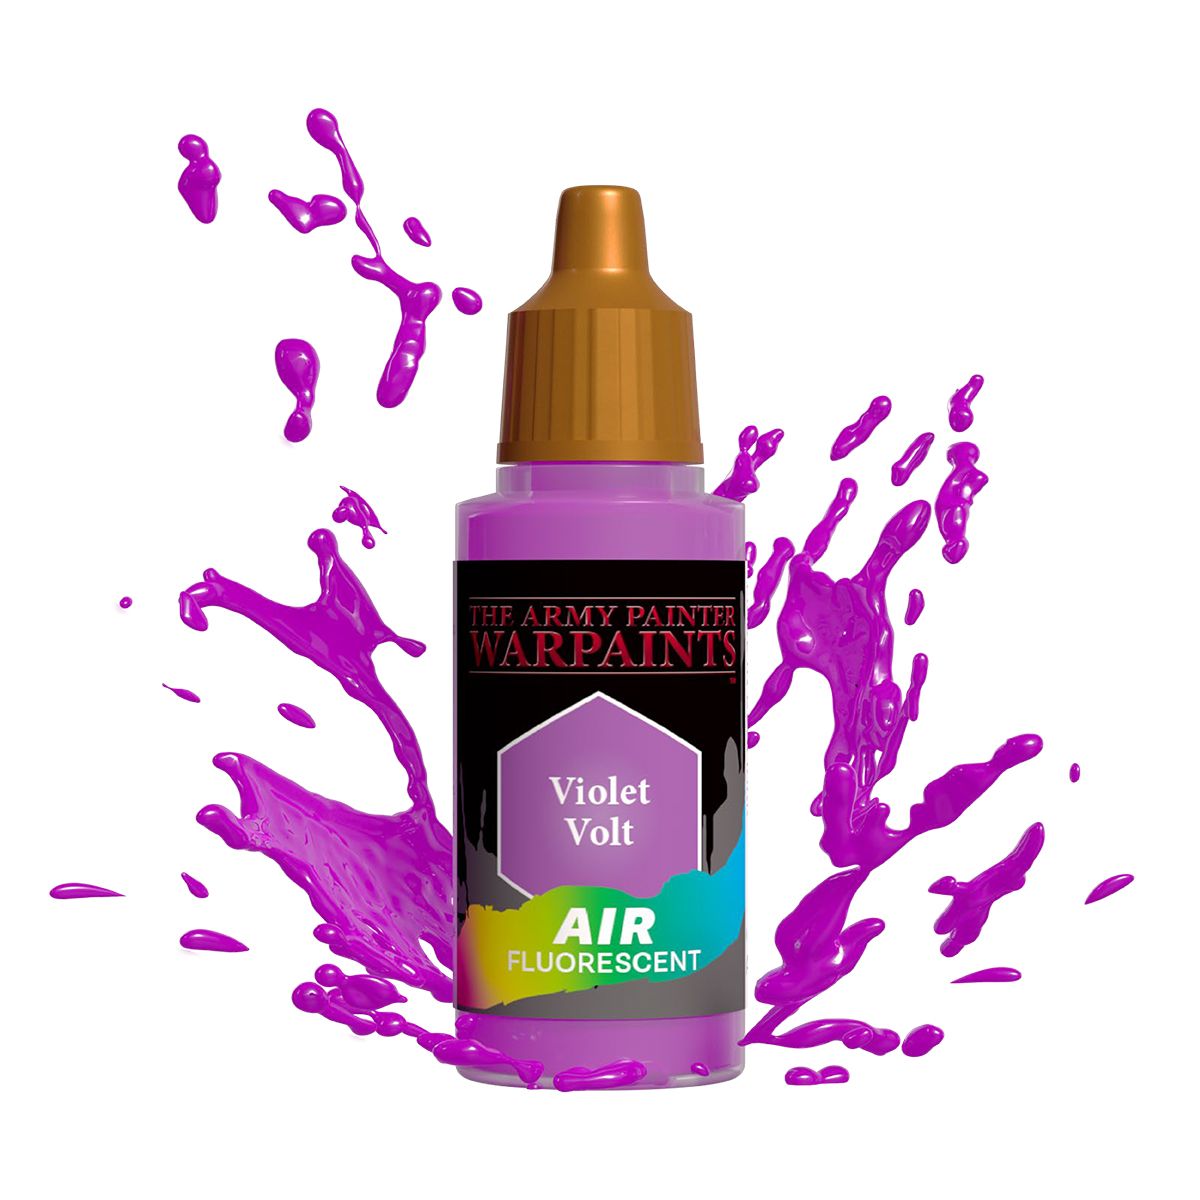 Warpaints Air Fluorescent: Violet Volt